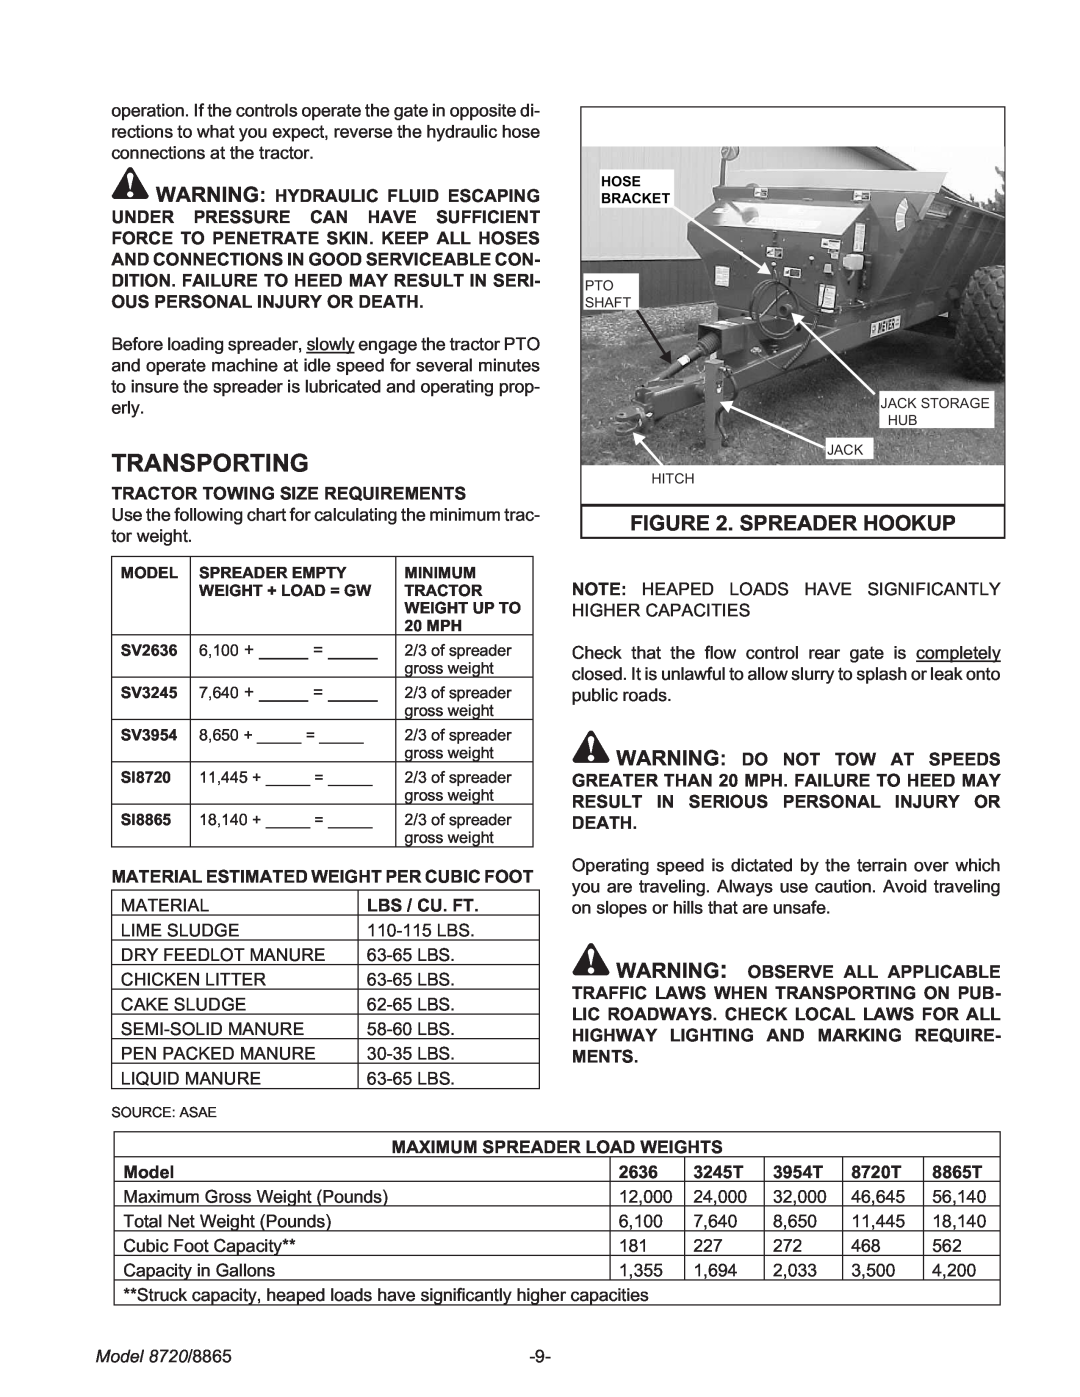 Meyer manual Transporting, Spreader Hookup, Model 8720/8865 